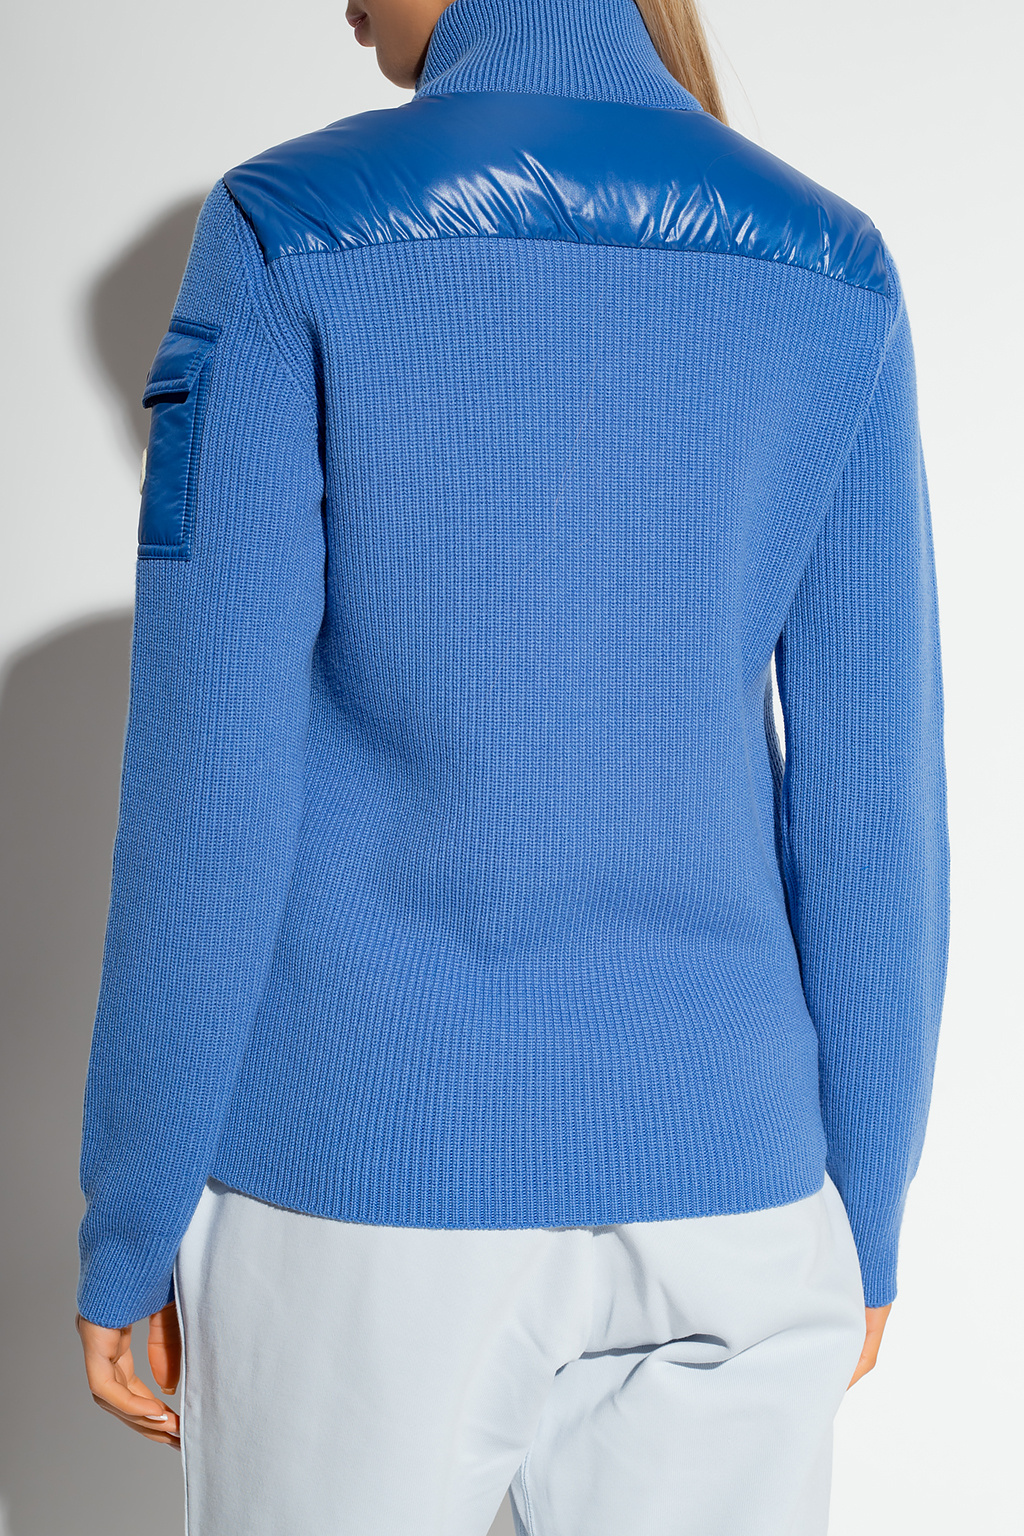 Moncler Pullover mit Reißverschlusskragen Blau